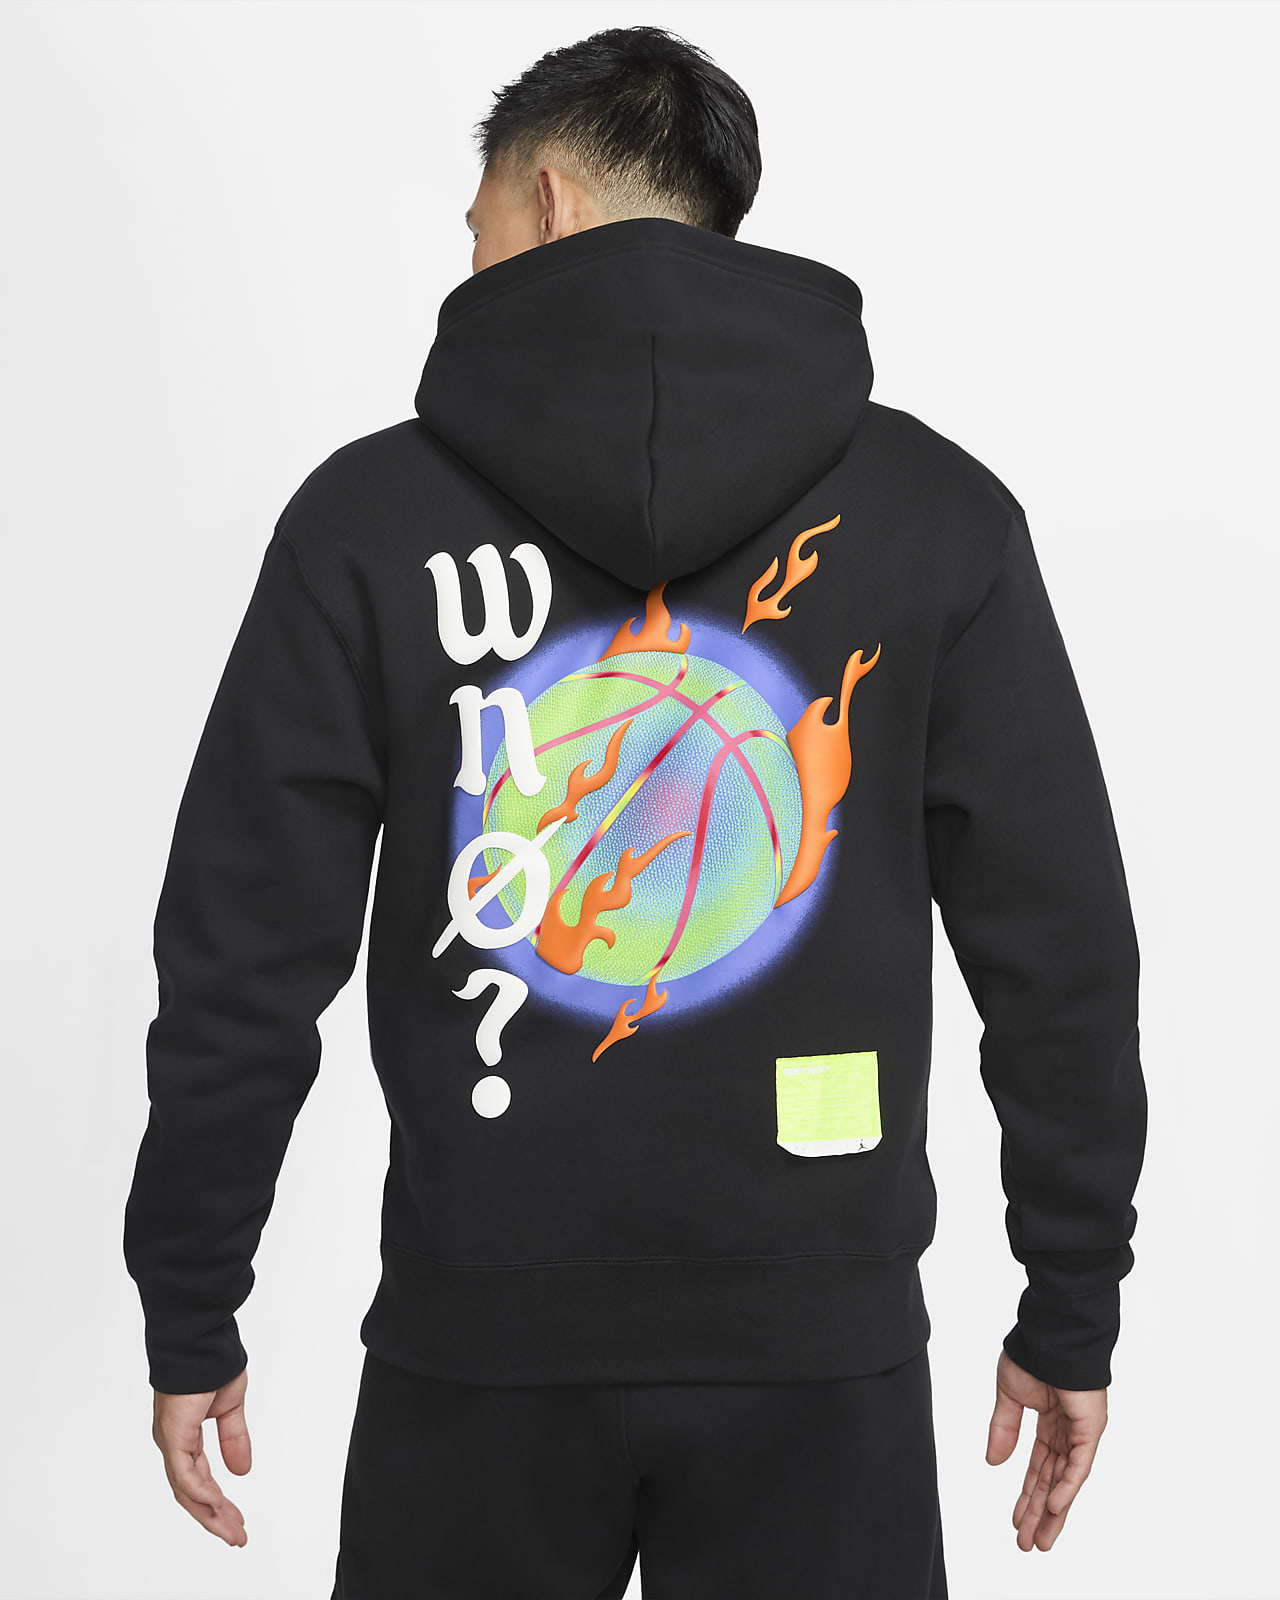 why not russell westbrook hoodie